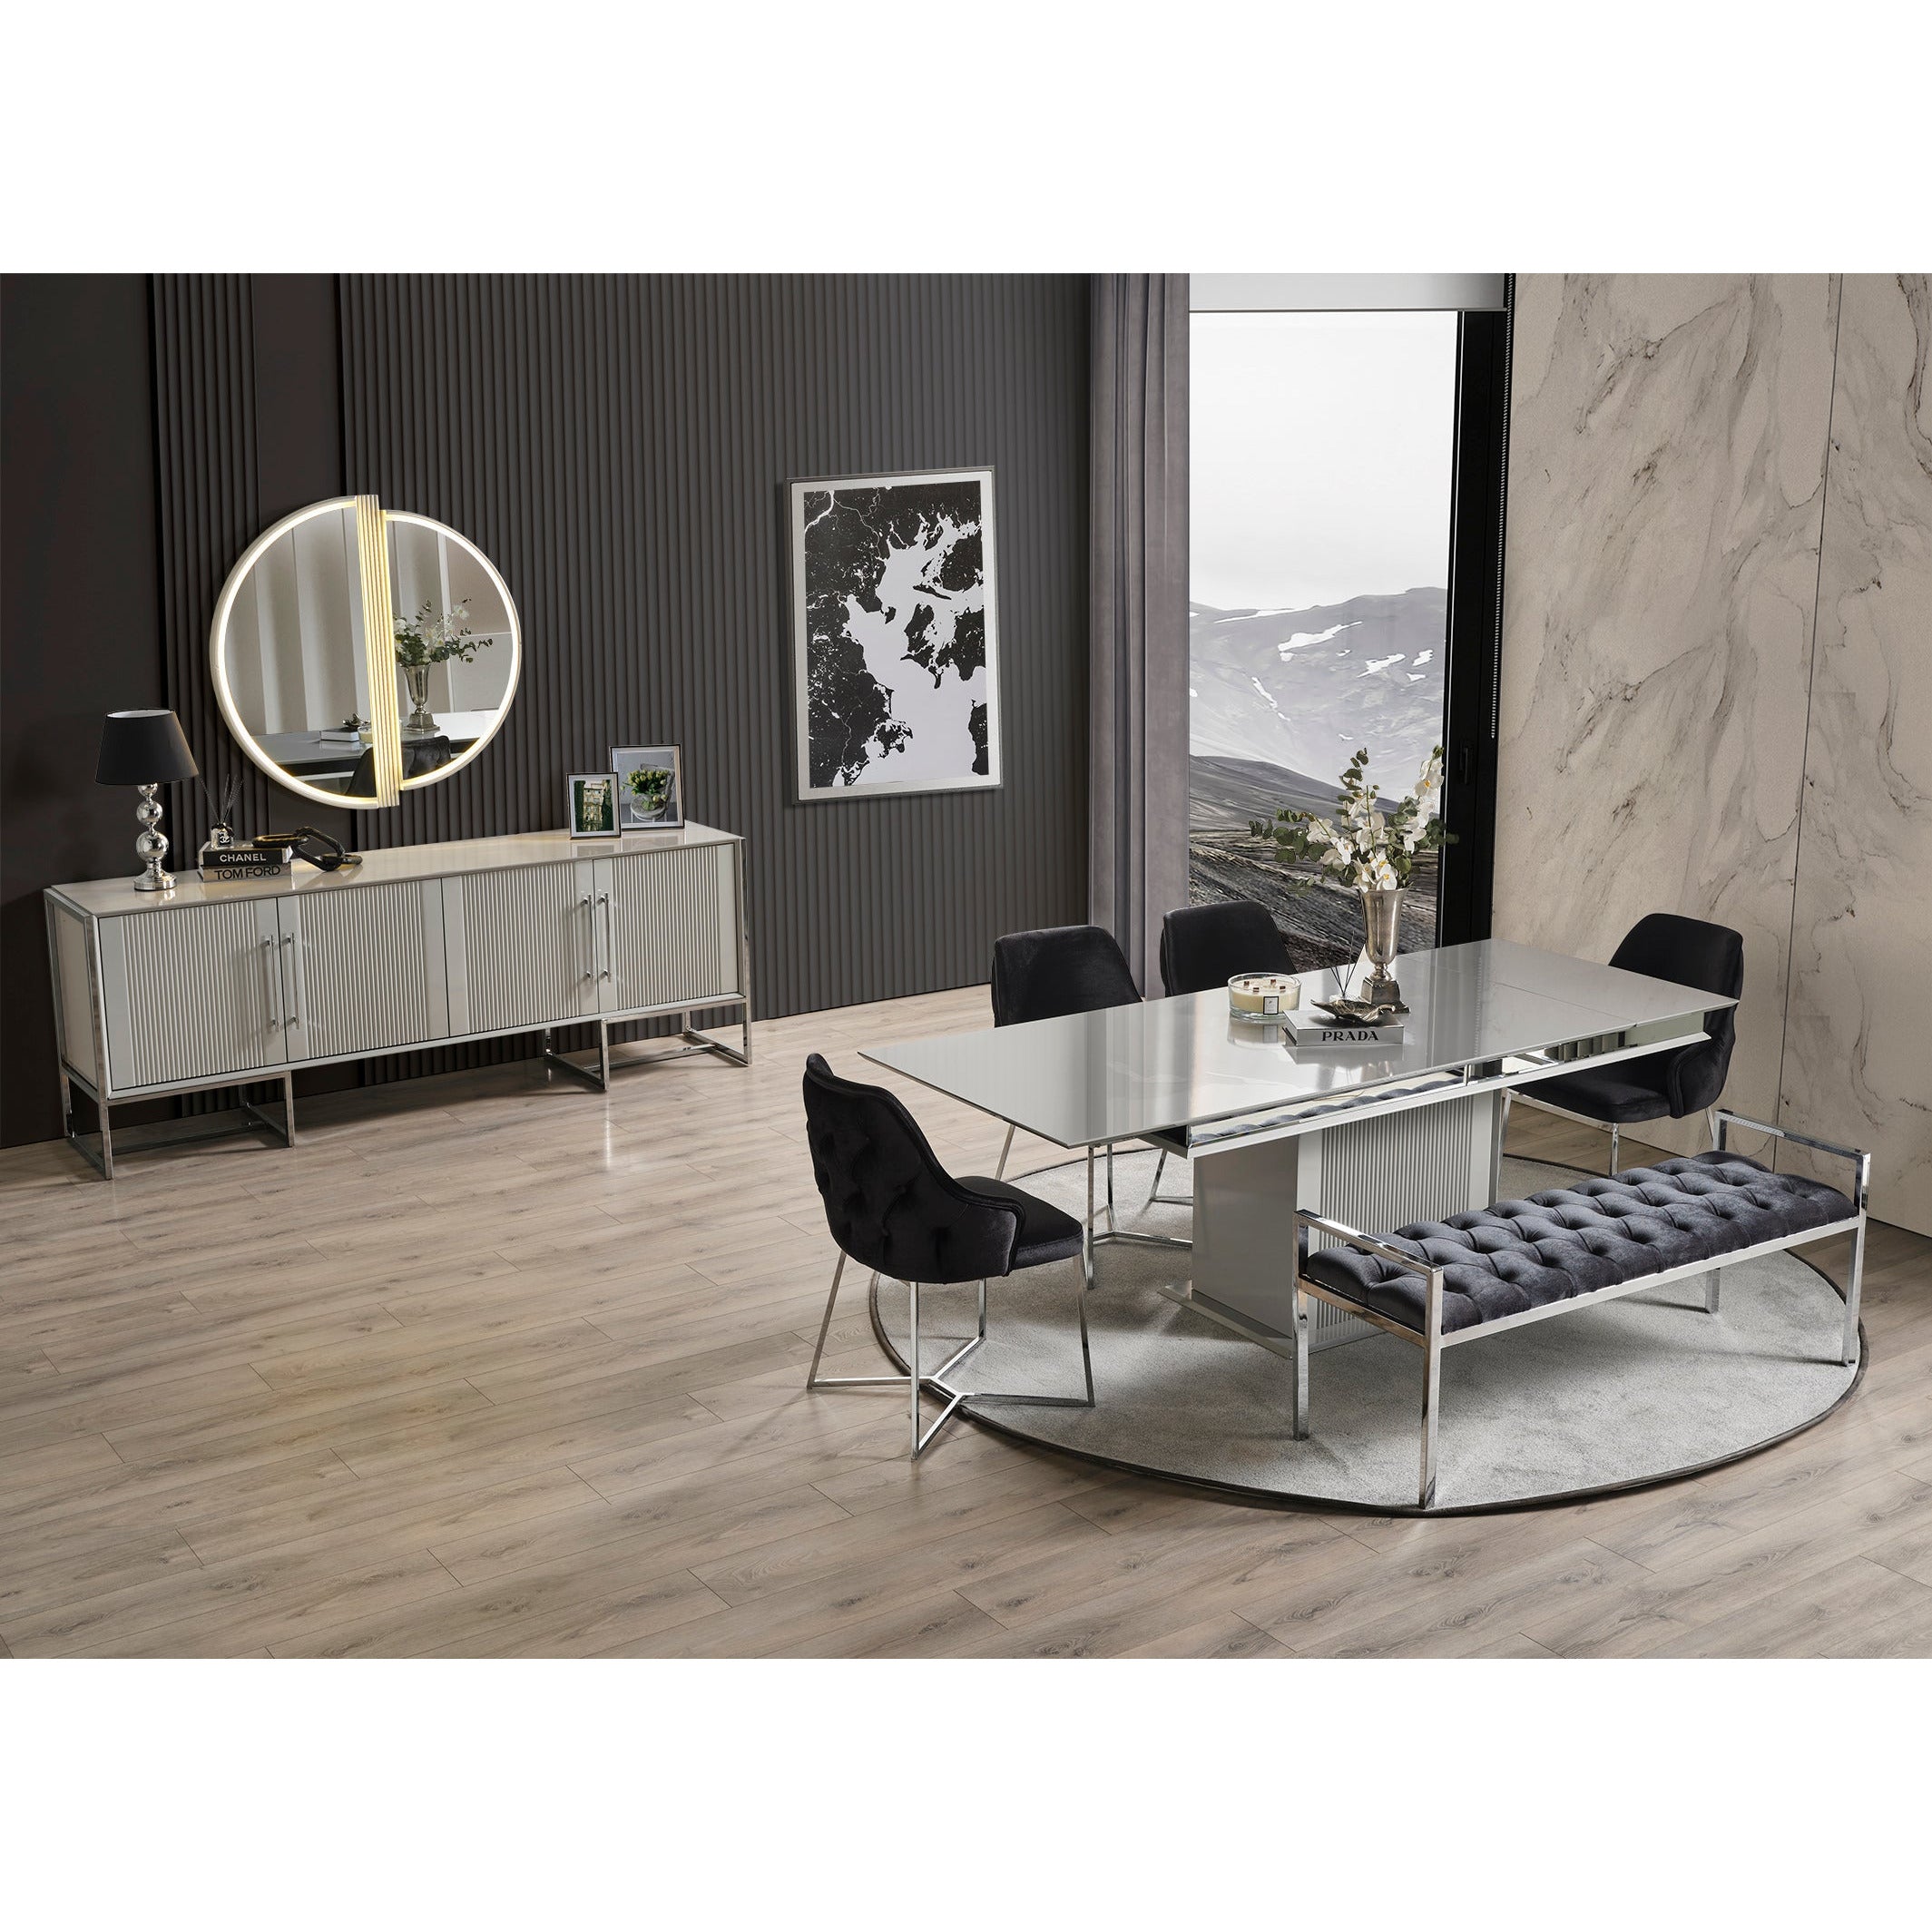 Pirlanta Stol - LINE Furniture Group